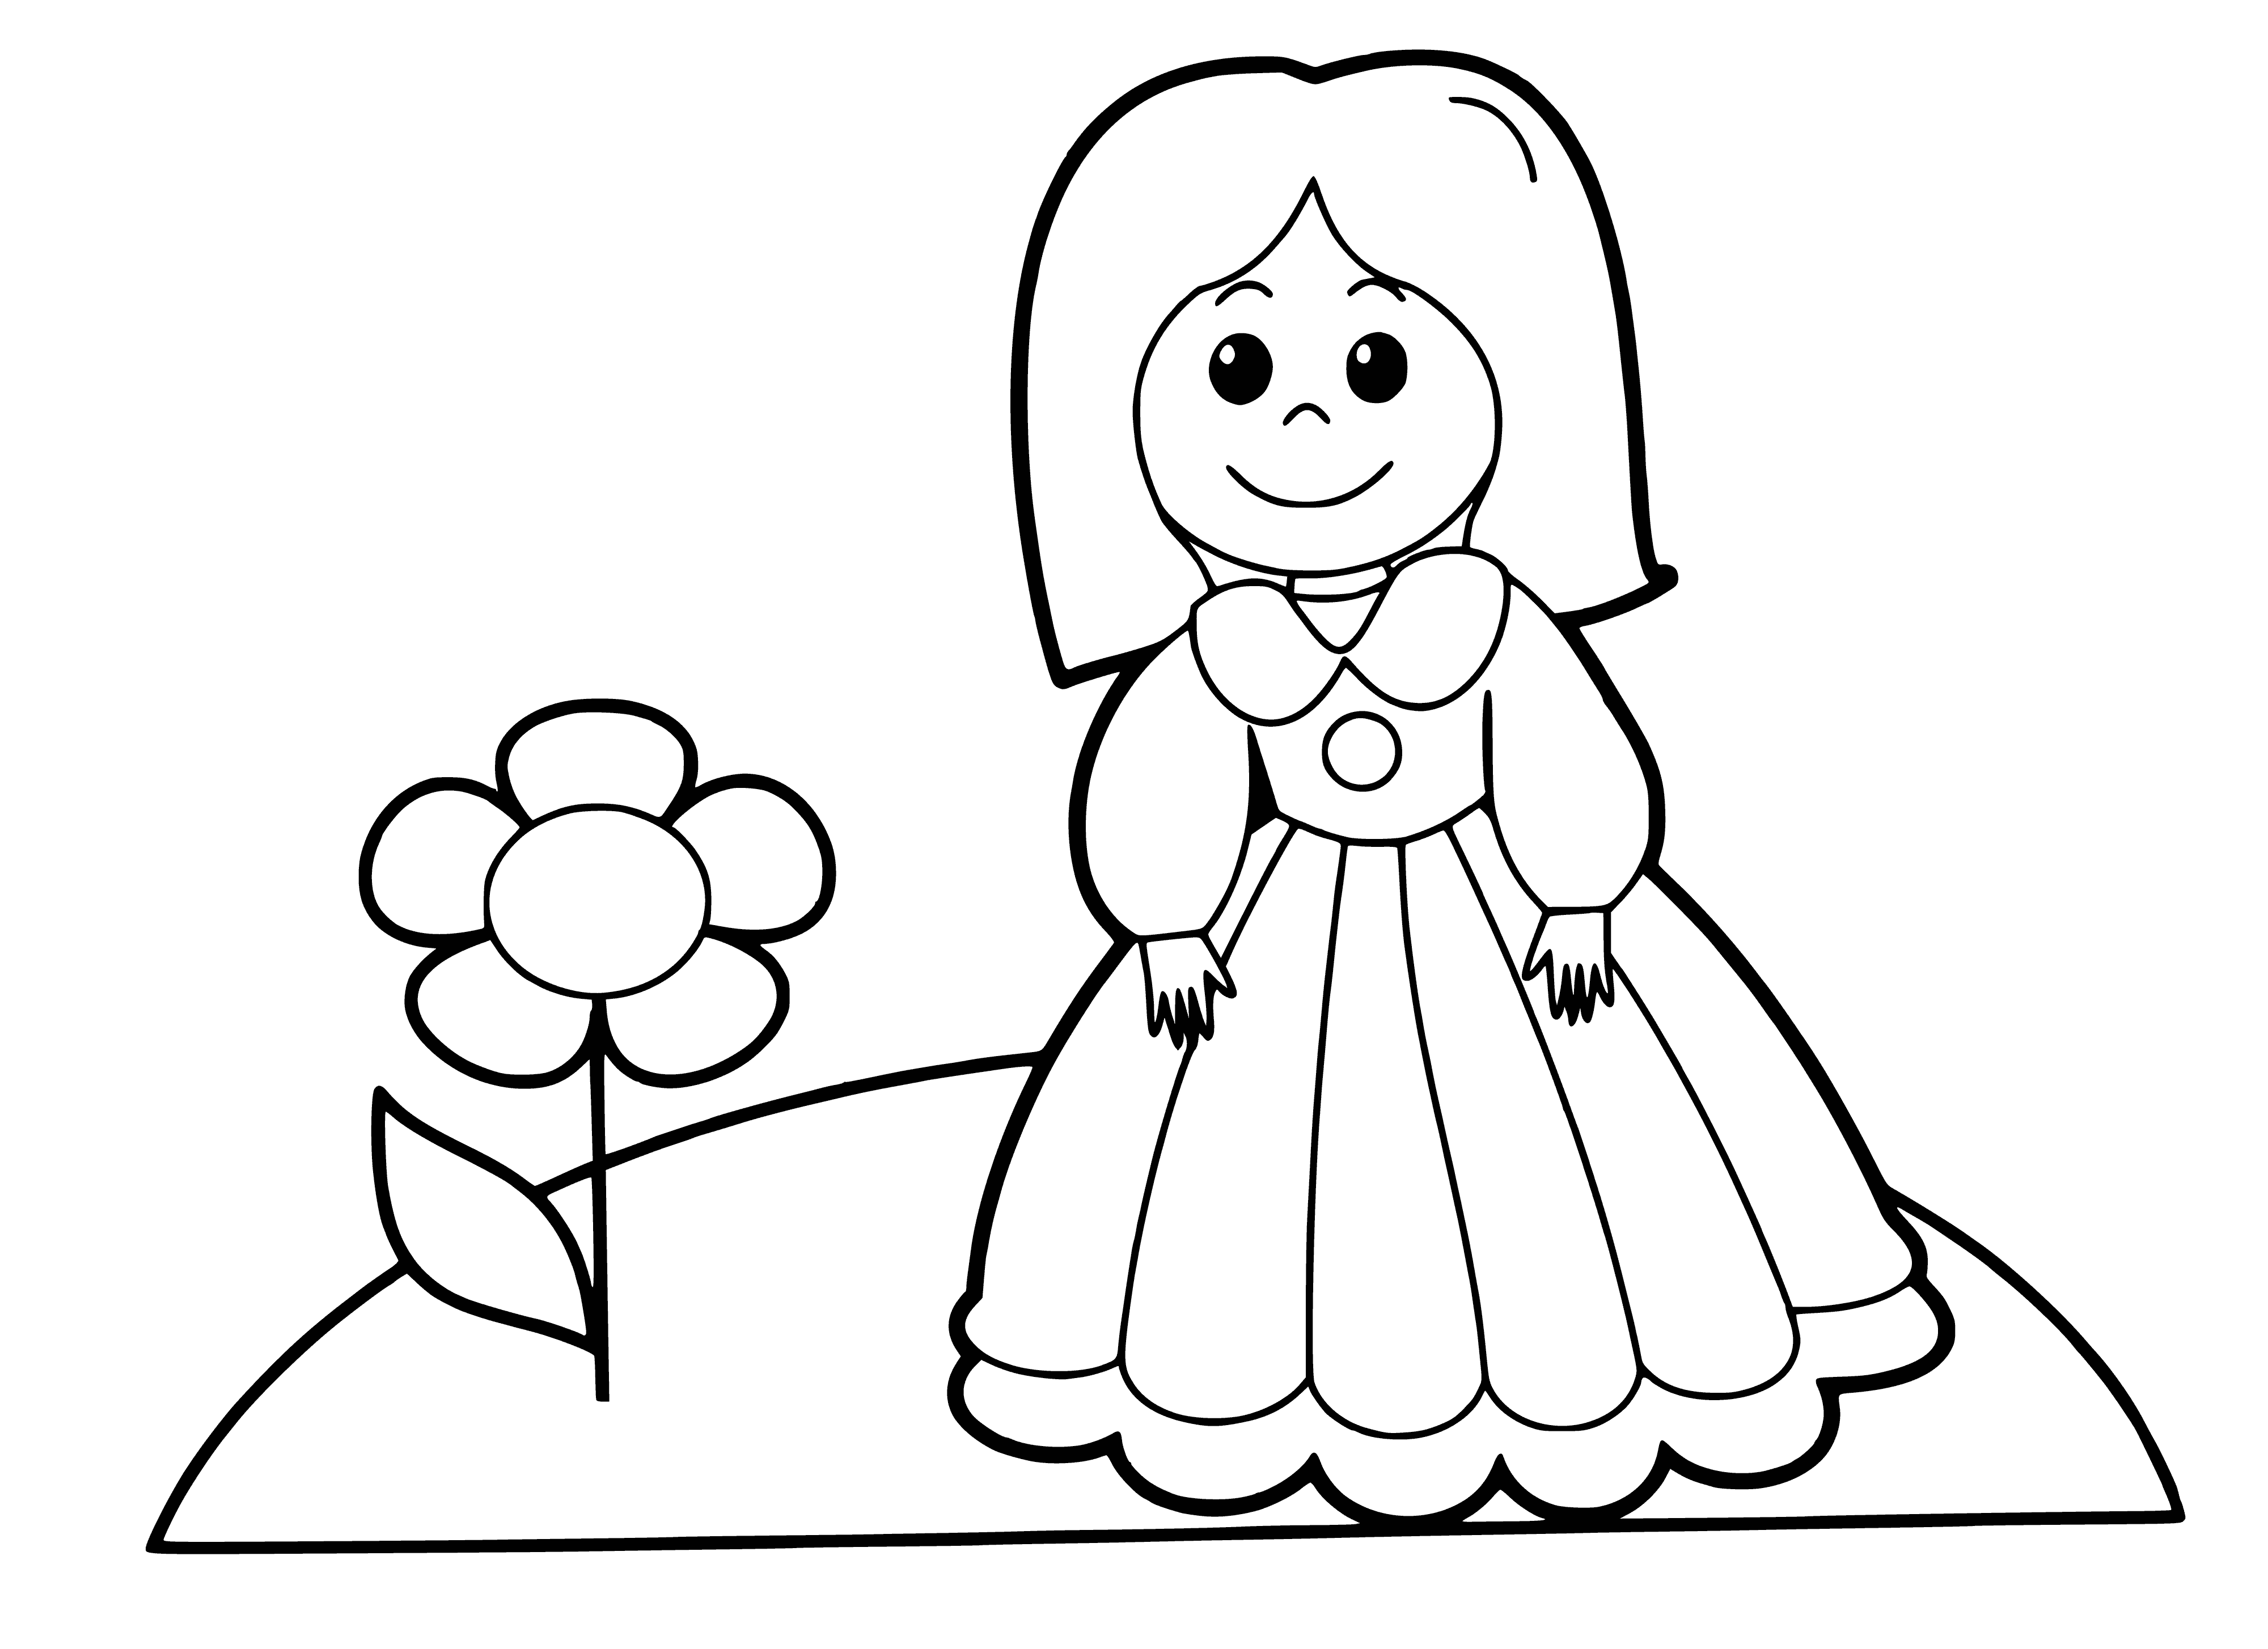 Meisie en blom inkleurbladsy